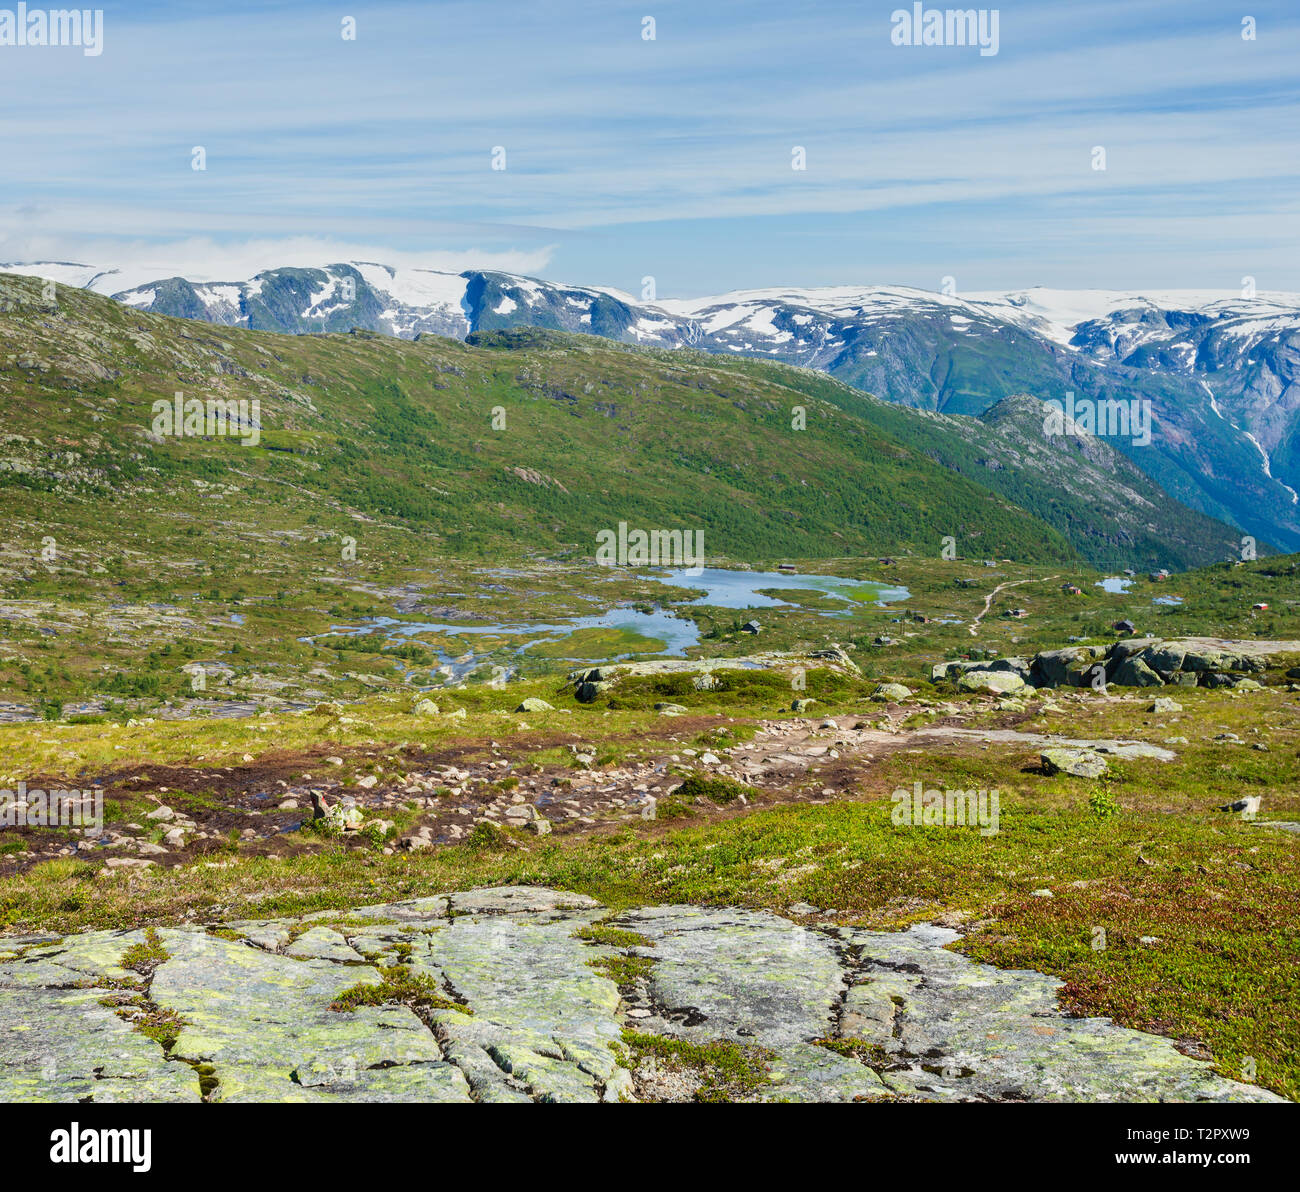 Estate Roldal highlands plateau paesaggio di montagna con piccoli laghi e case sul pendio (Norvegia, sul sentiero escursionistico per Trolltunga da Odda). Foto Stock